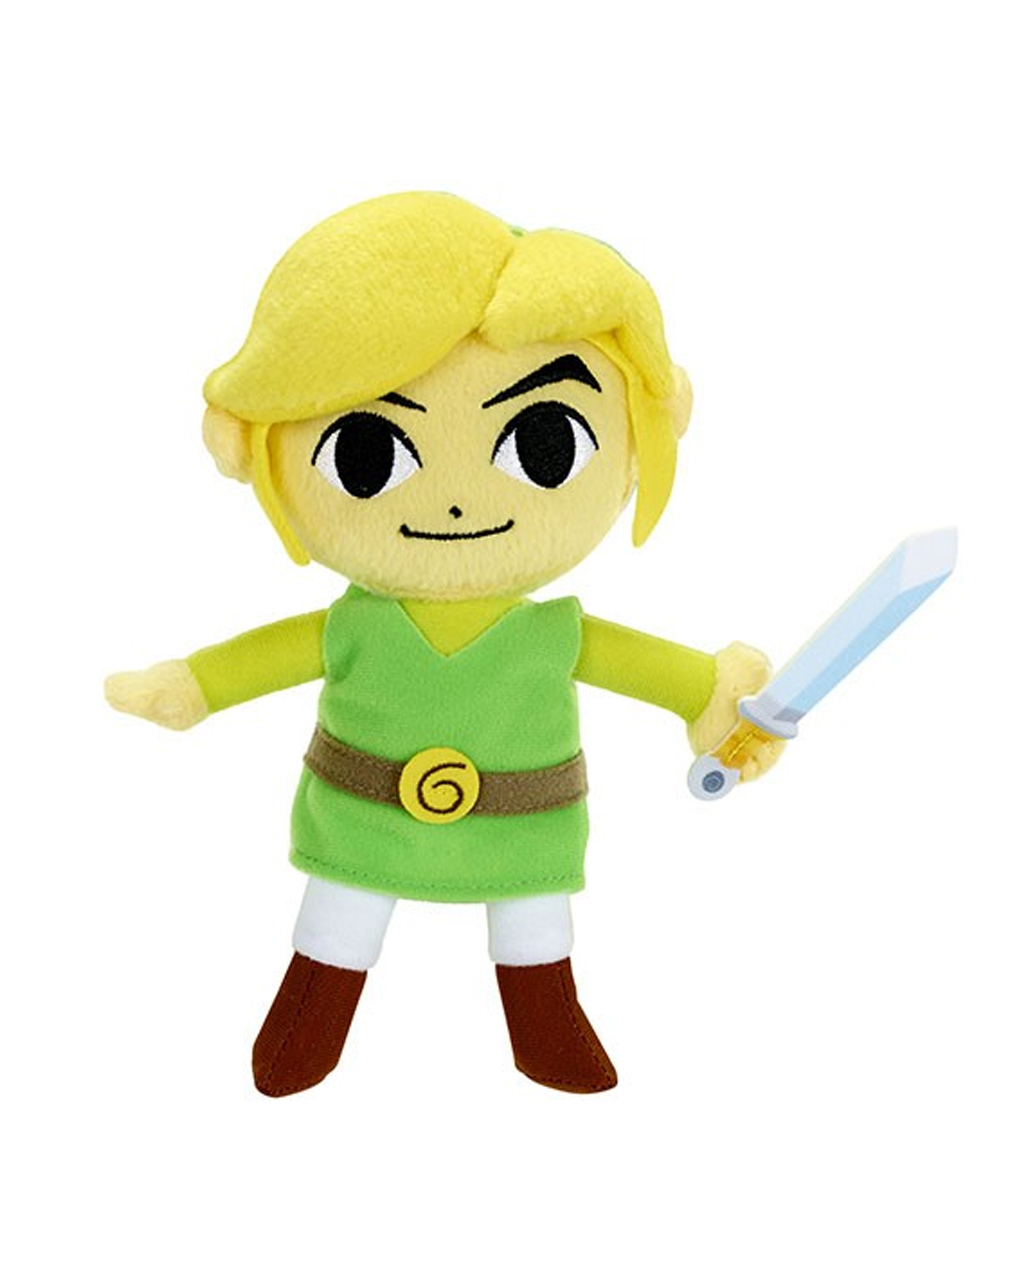 The Legend of Zelda Link Plüschfigur online ordern!